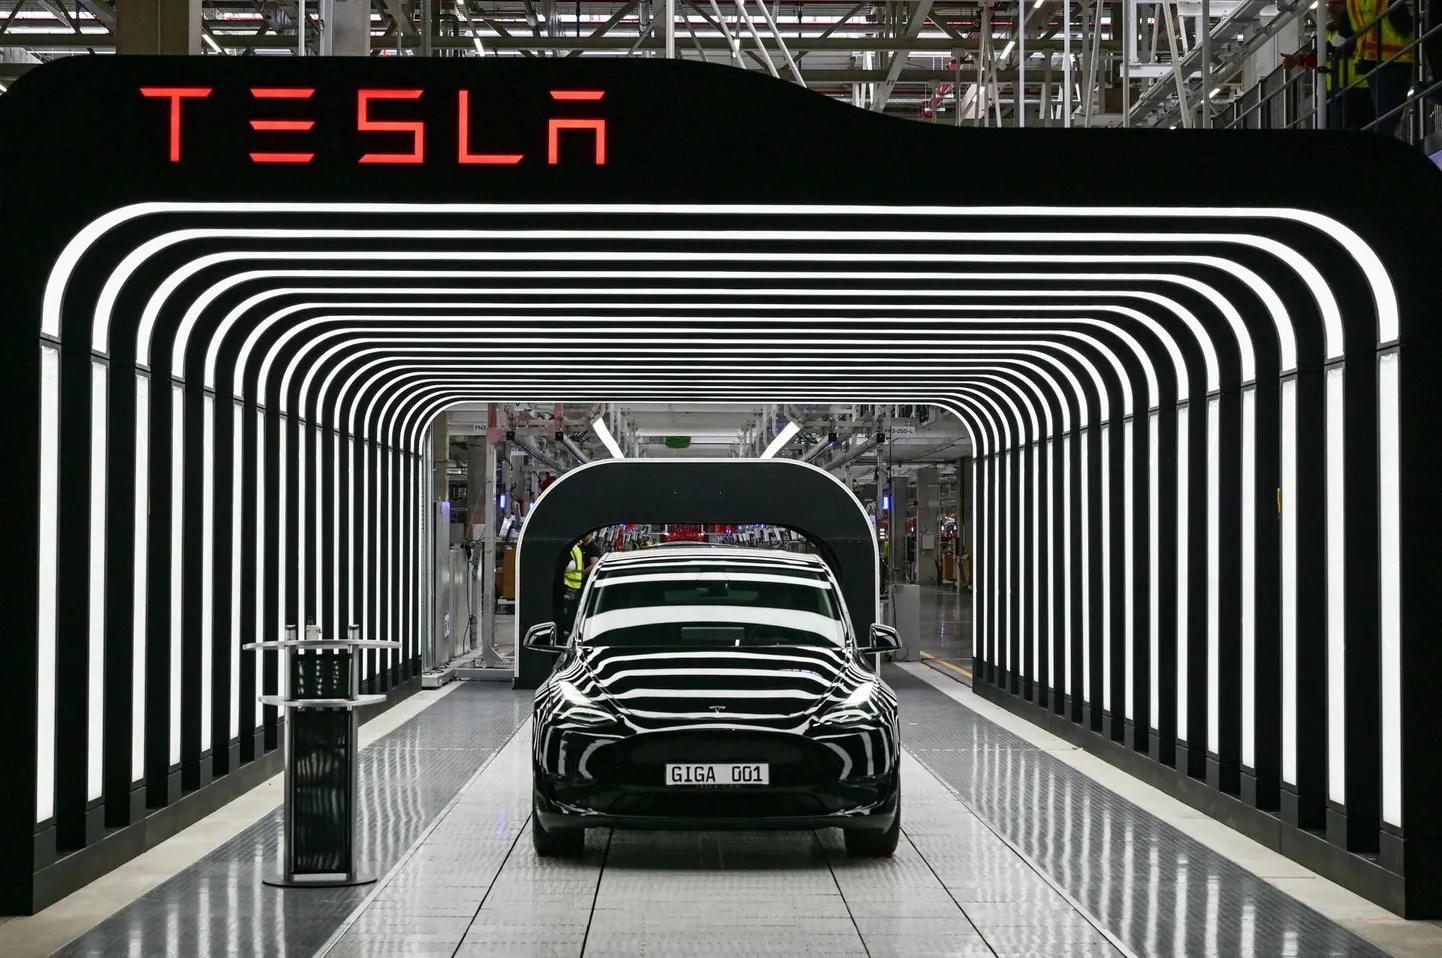 Eelmise aasta kevadel avas Tesla Saksamaal oma esimese tehase Euroopas, kus töötavad 12 000 inimest peaks valmistama pool miljonit sõidukit aastas.